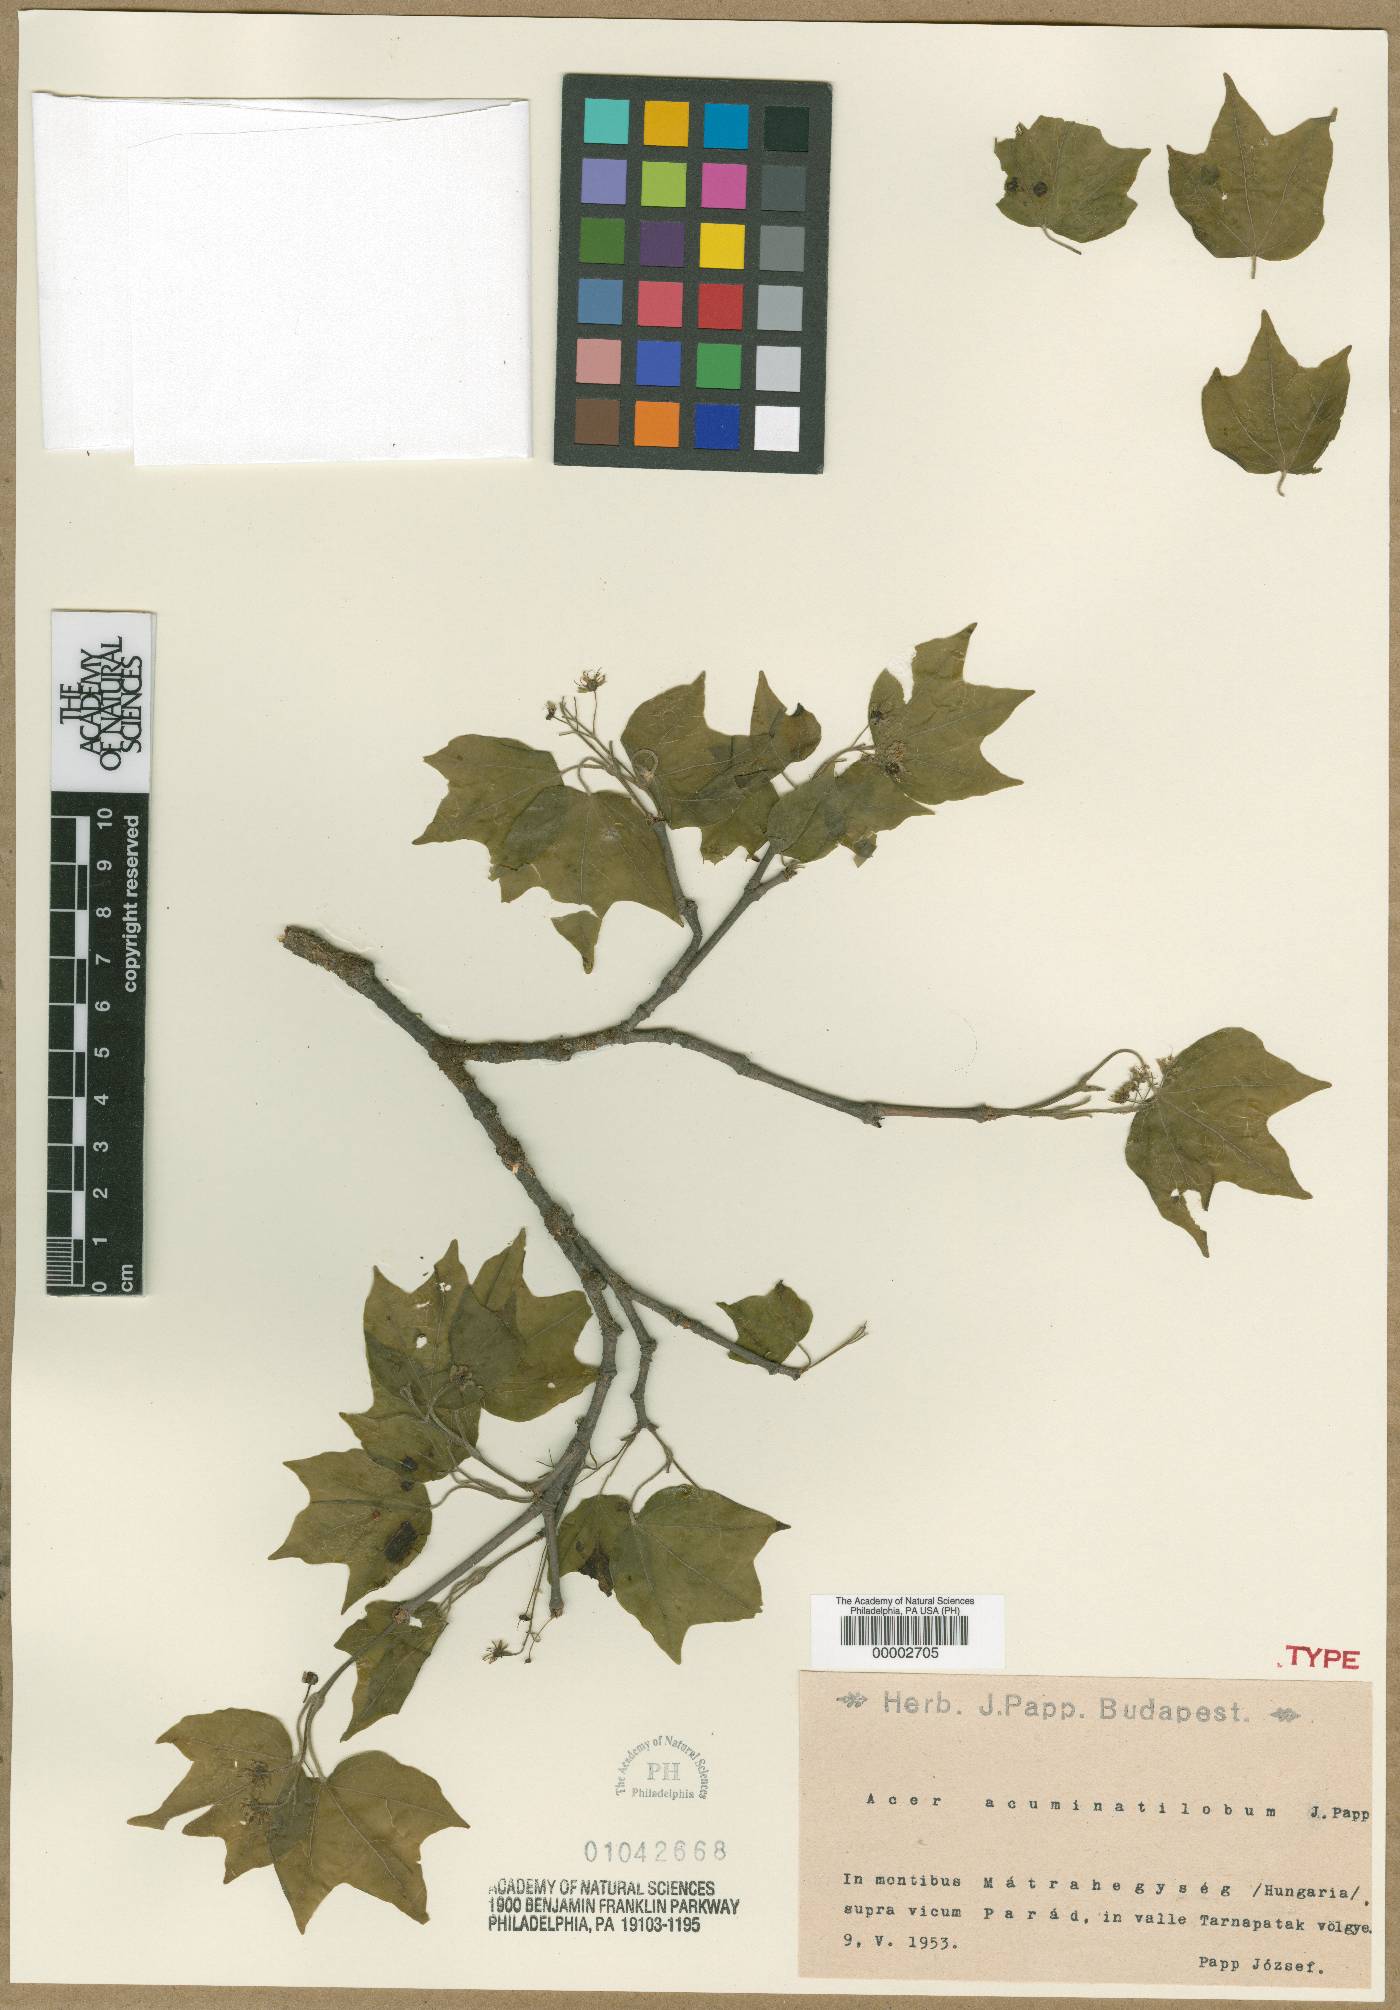 Acer campestre subsp. campestre image